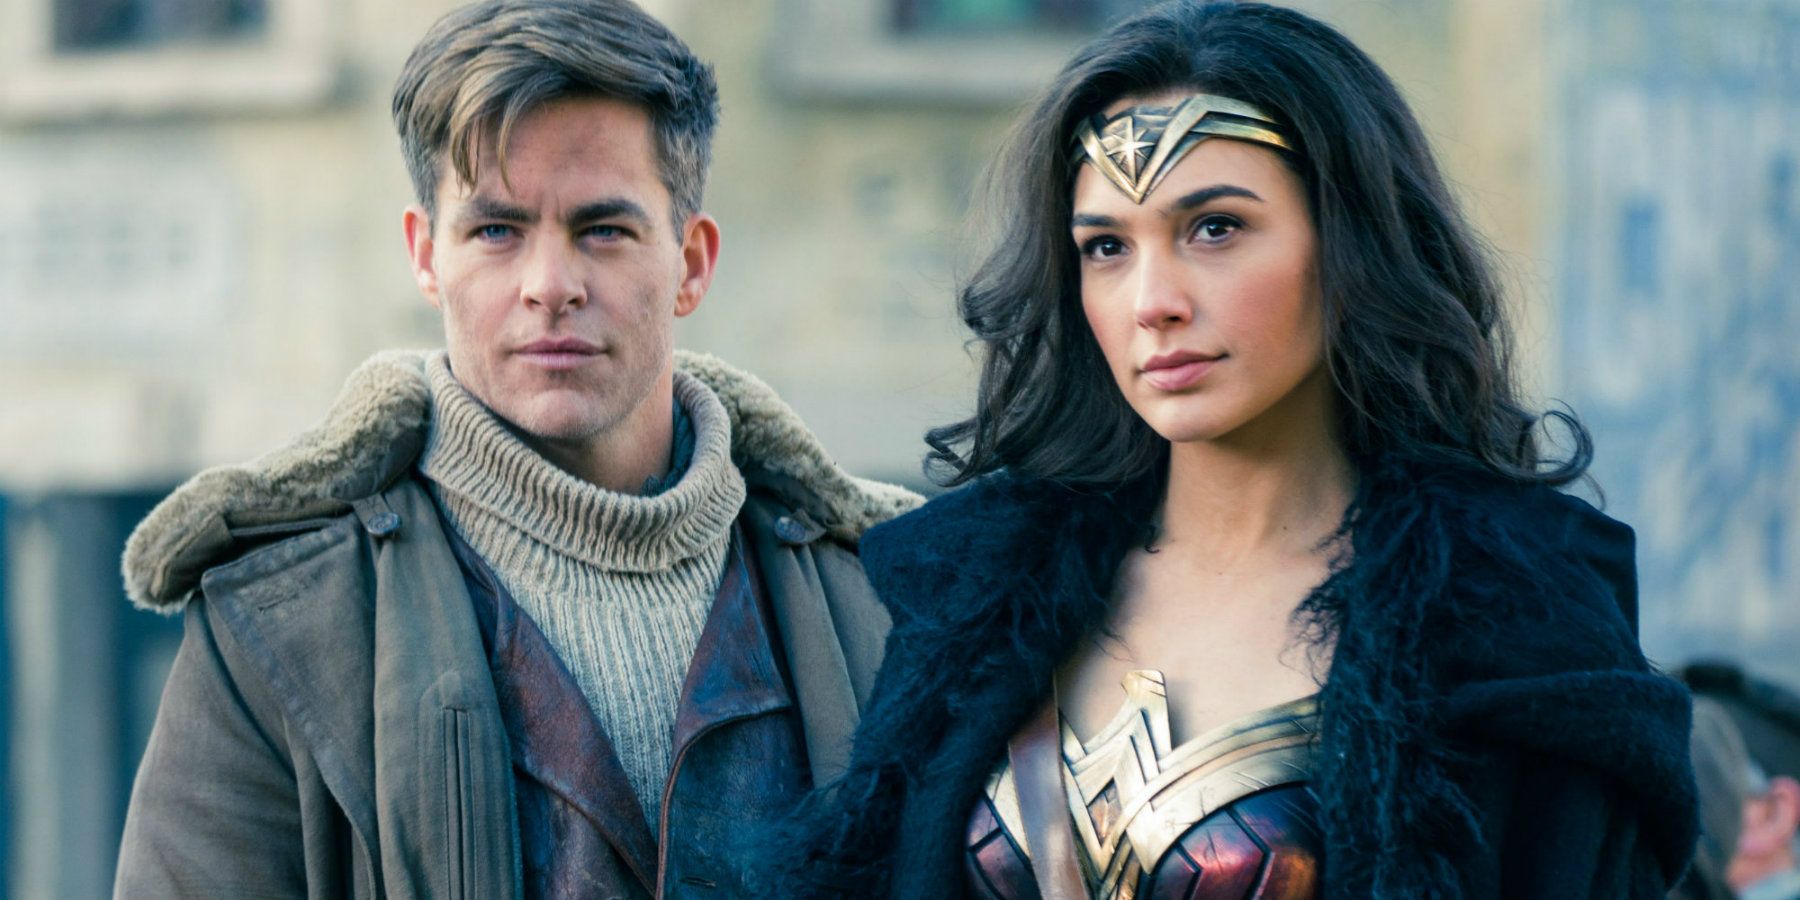 Wonder Woman Movie Gender Equality